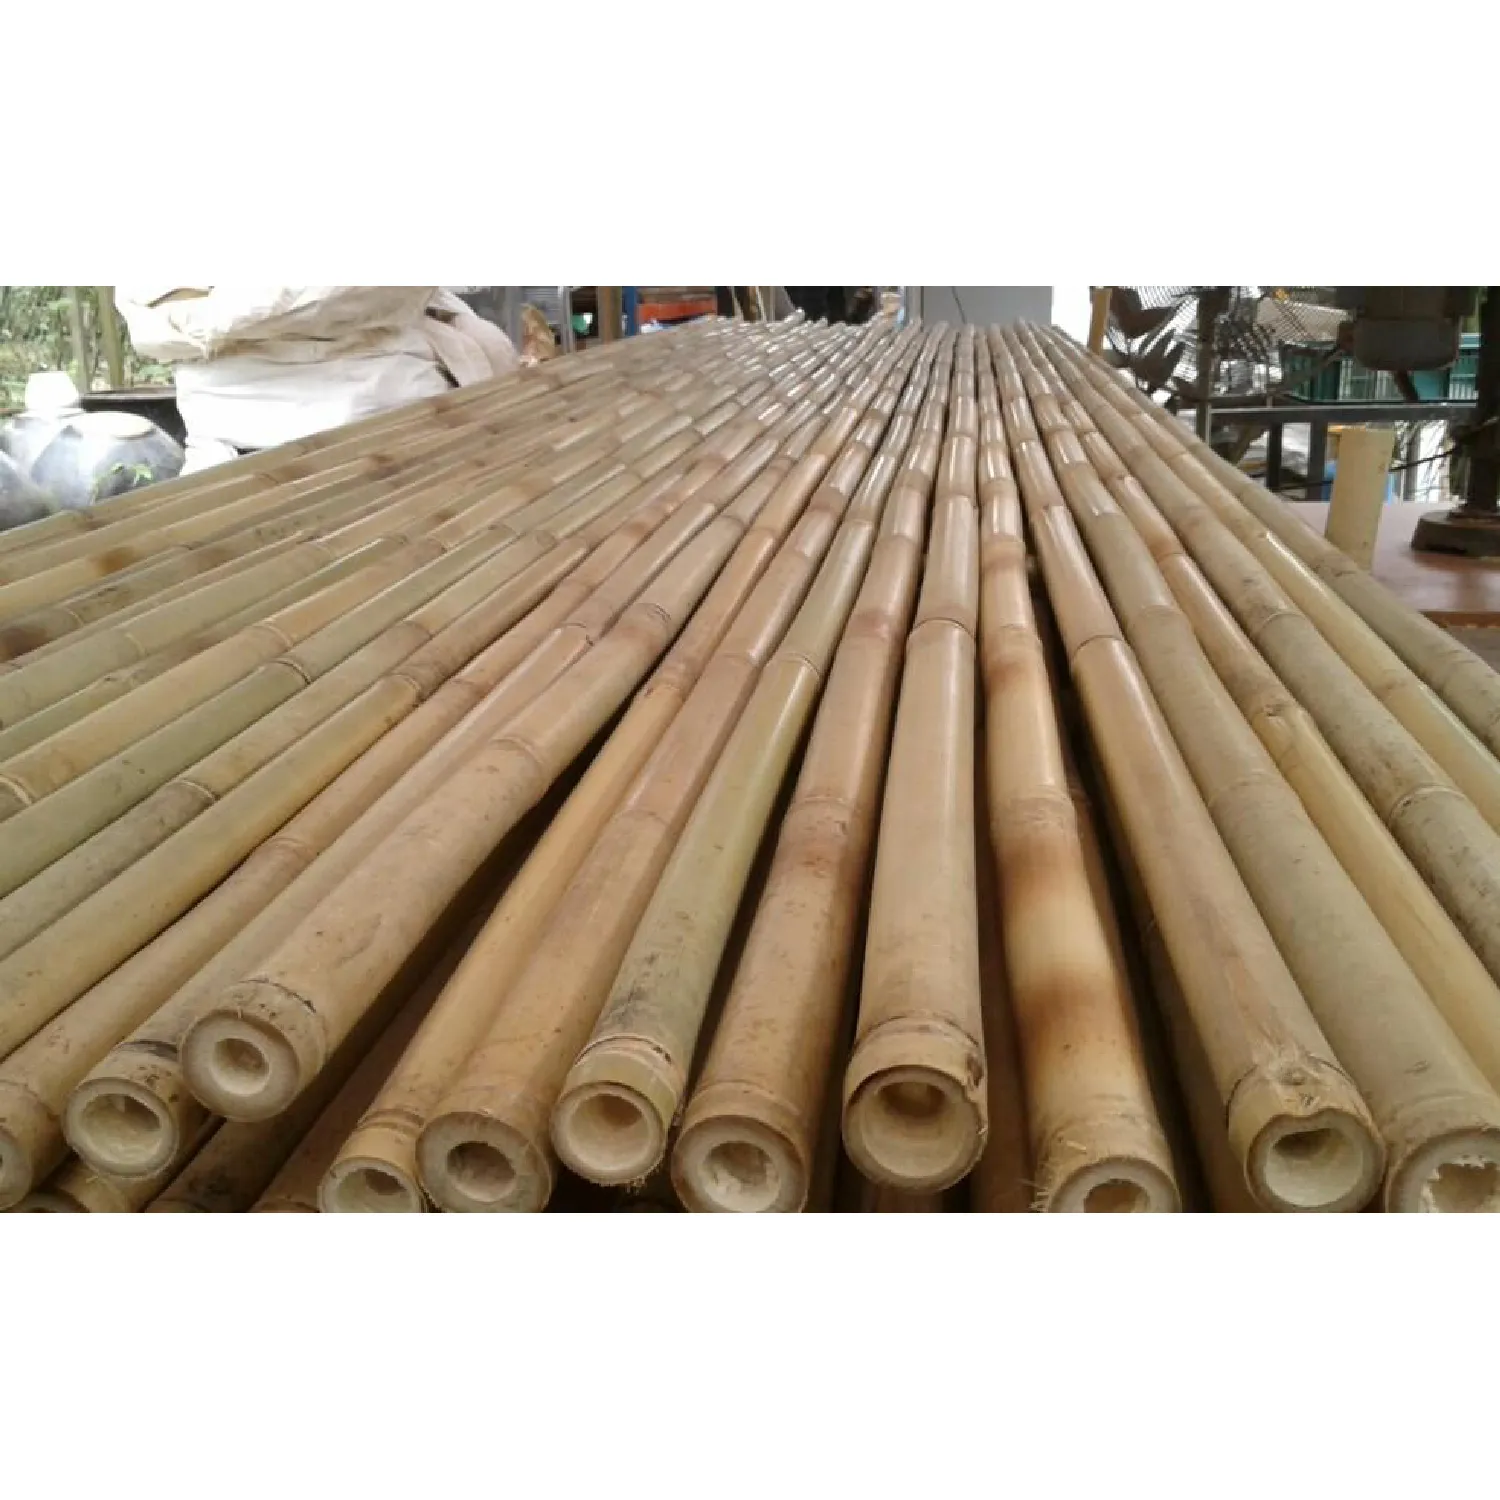 Hoge Kwaliteit Vietnam Bamboe Palen Stok Tropische Natuurlijke Bamboe Behandeld Voor De Bouw Hete Verkoop